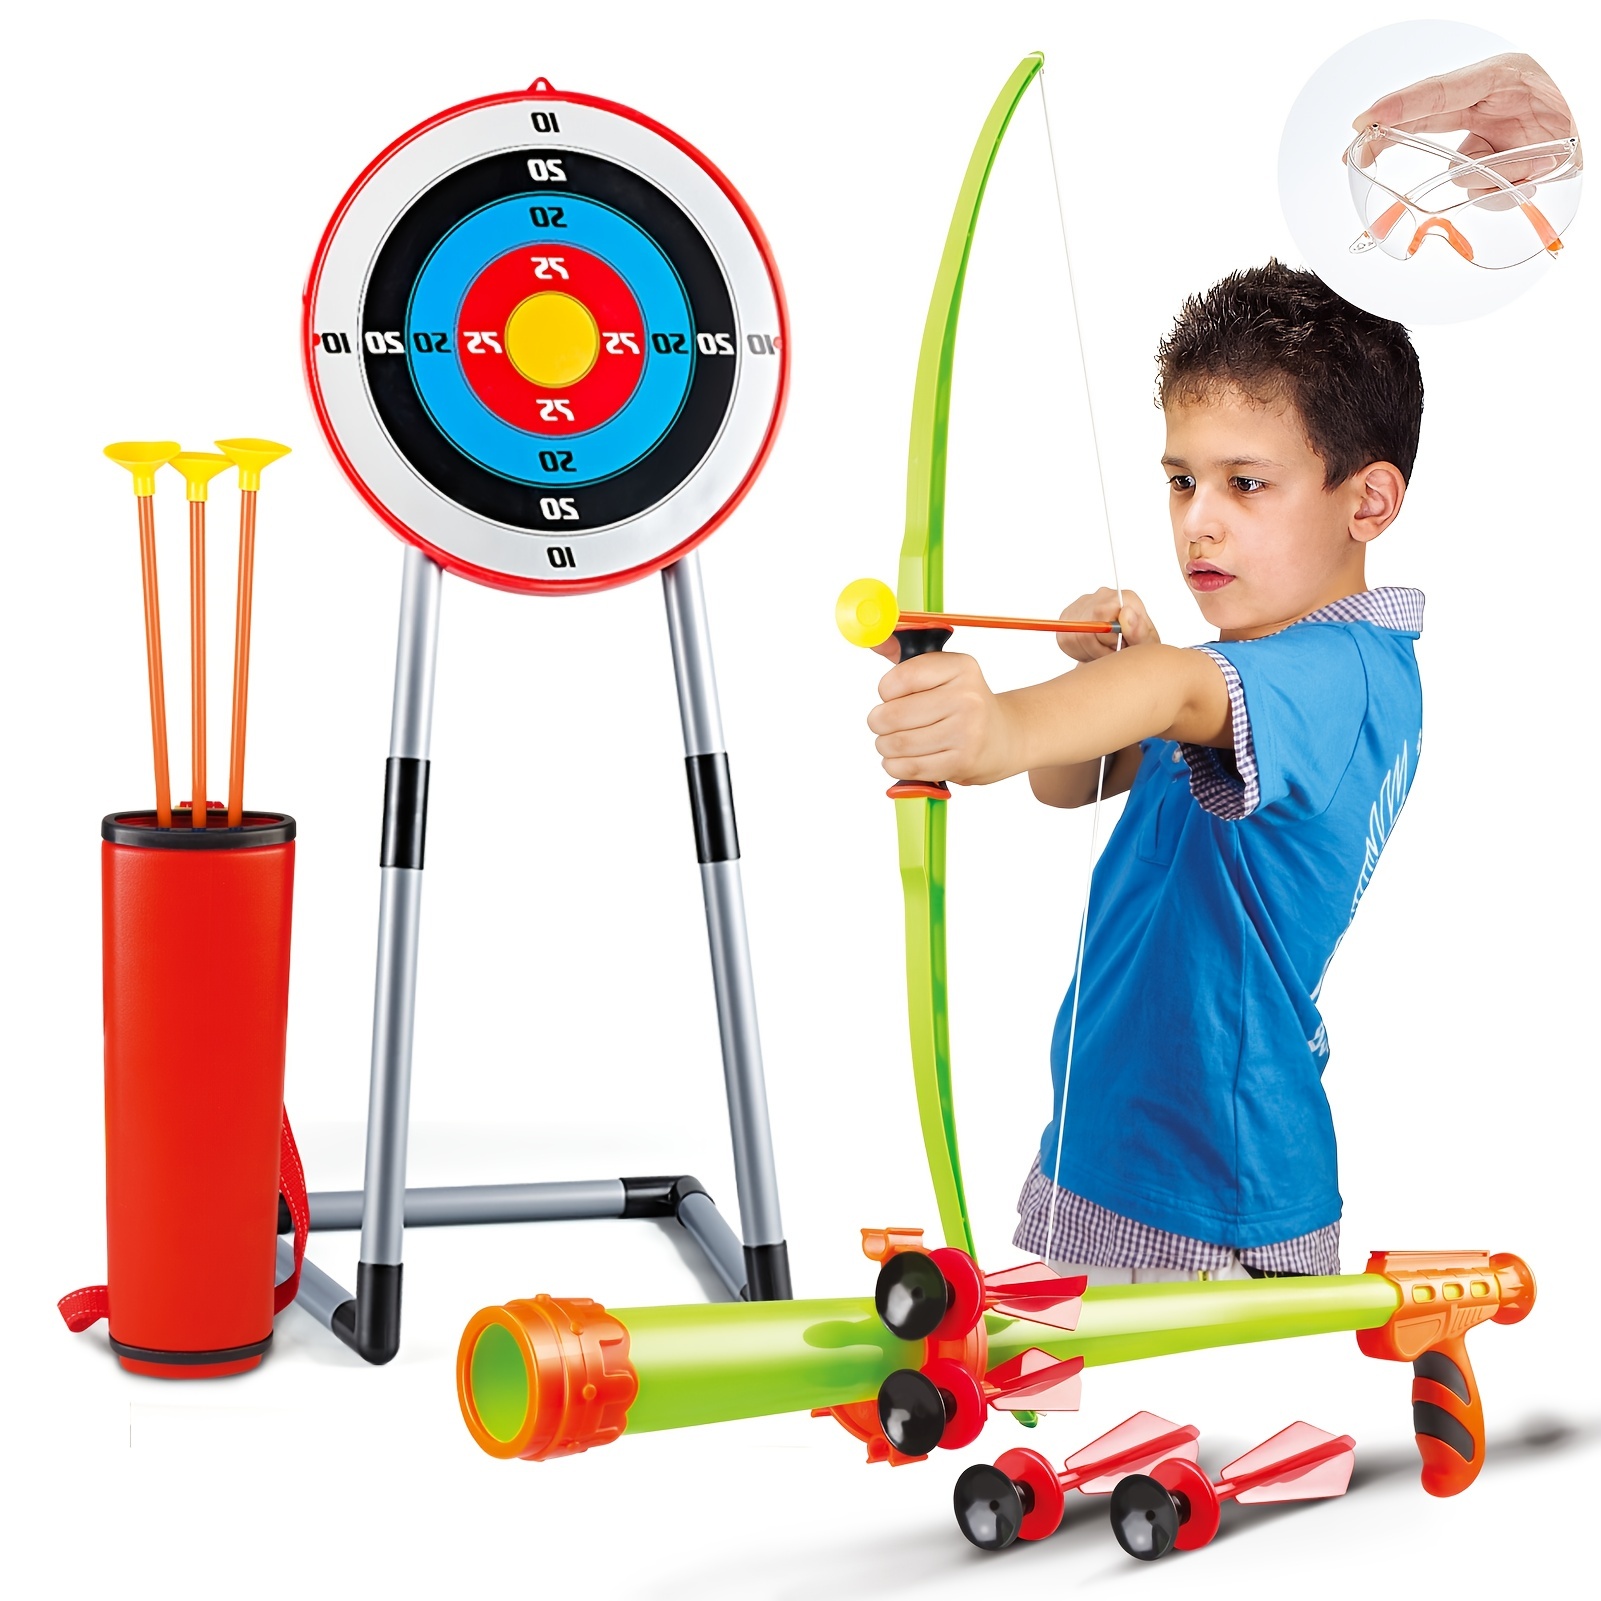 40cm Wooden Children Toy Crossbow with Arrow Target Practice Gun